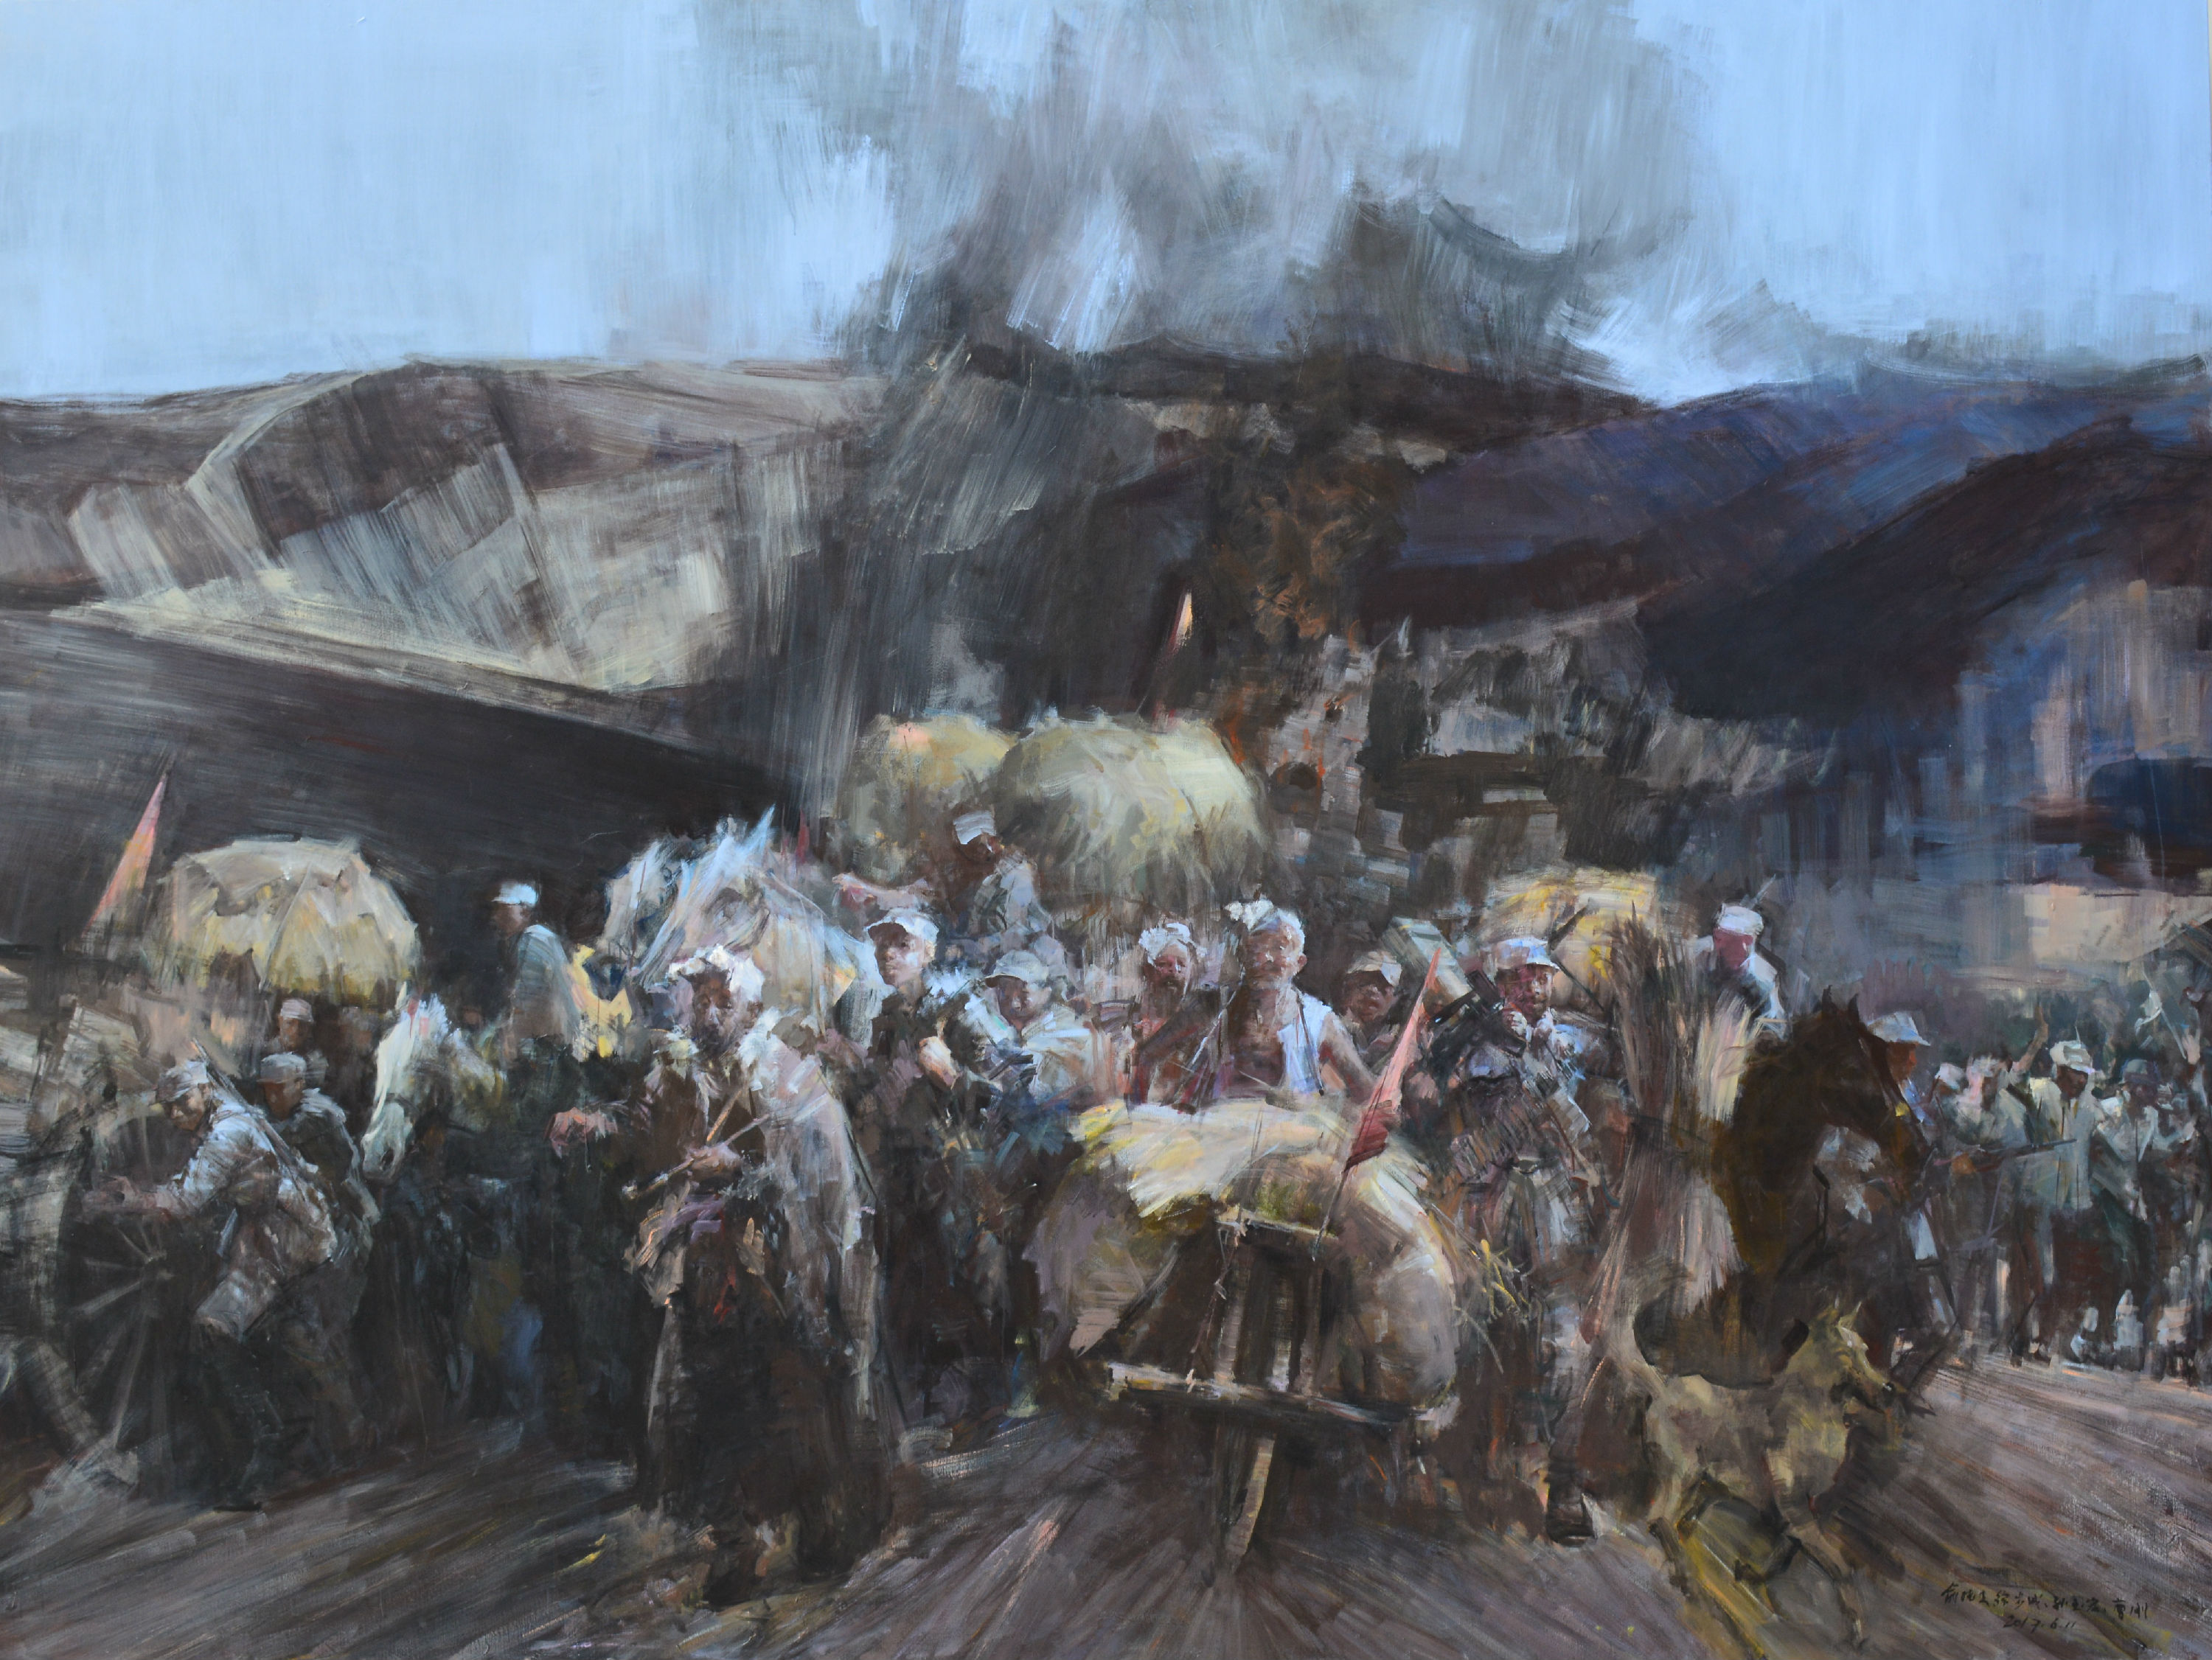 文汇新闻:上师大创作的大型油画《车桥战役》《蟠龙镇